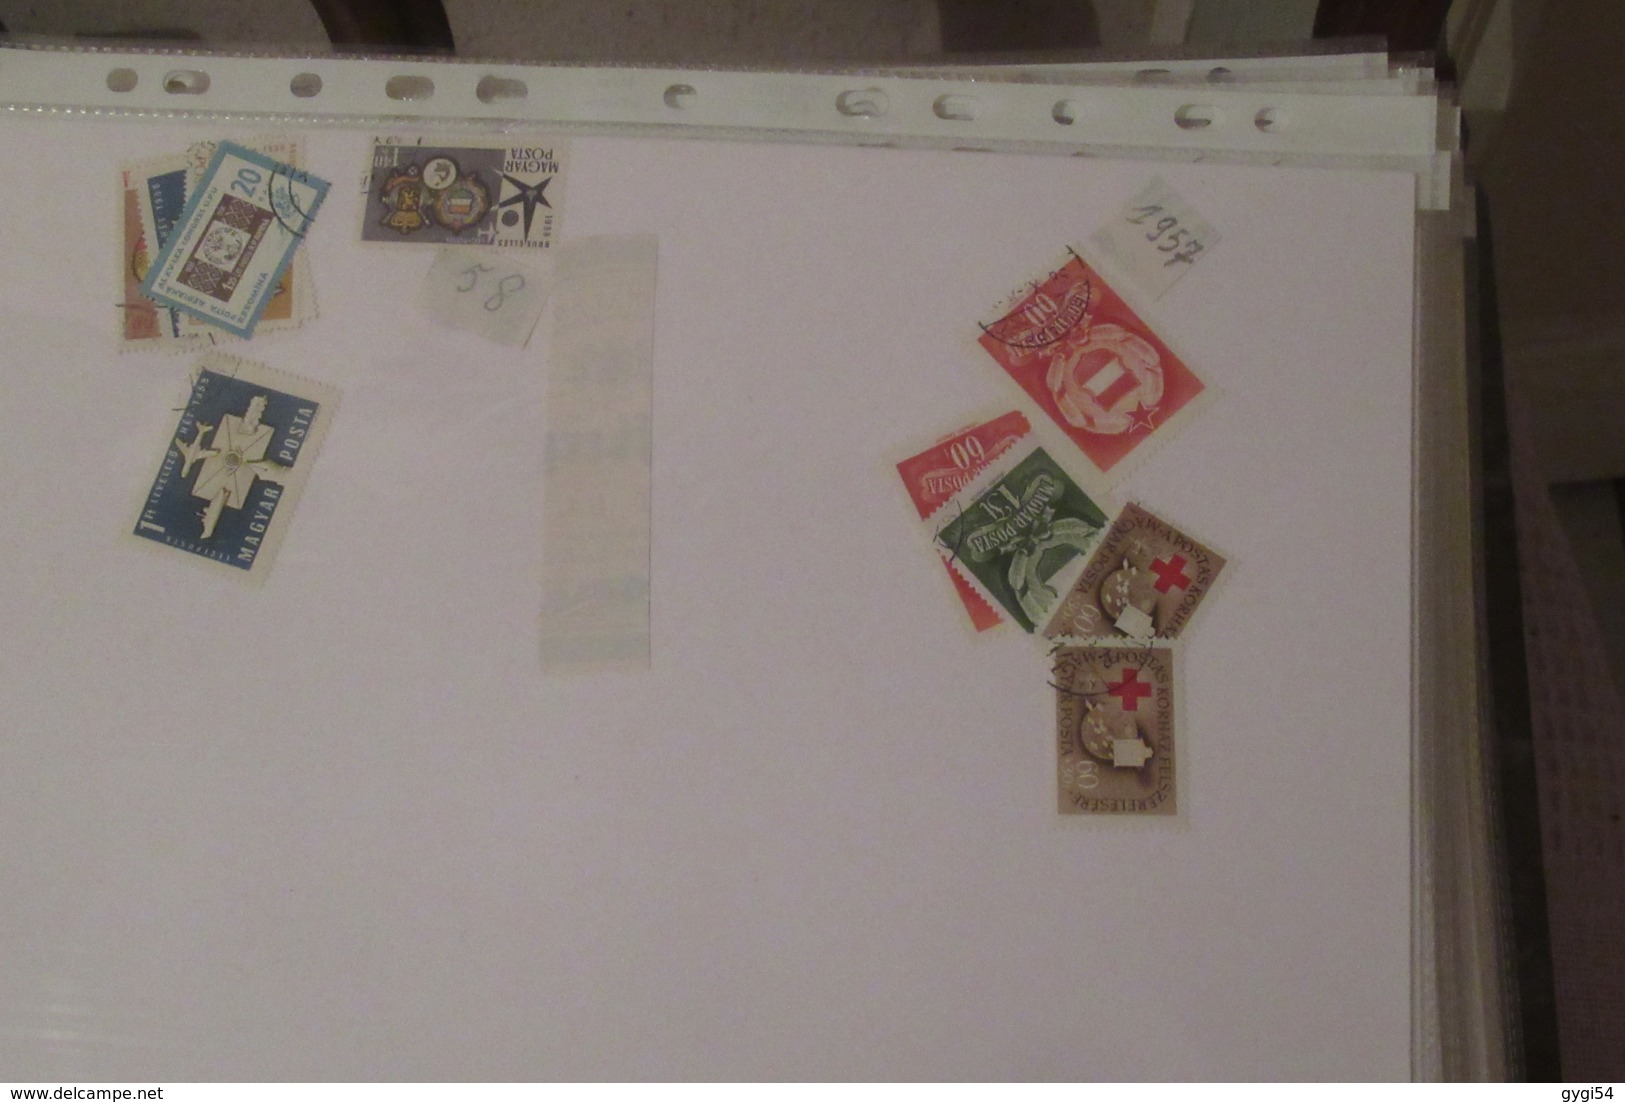 Vrac  divers et  France classeur à bandes timbres français neufs 75 scans